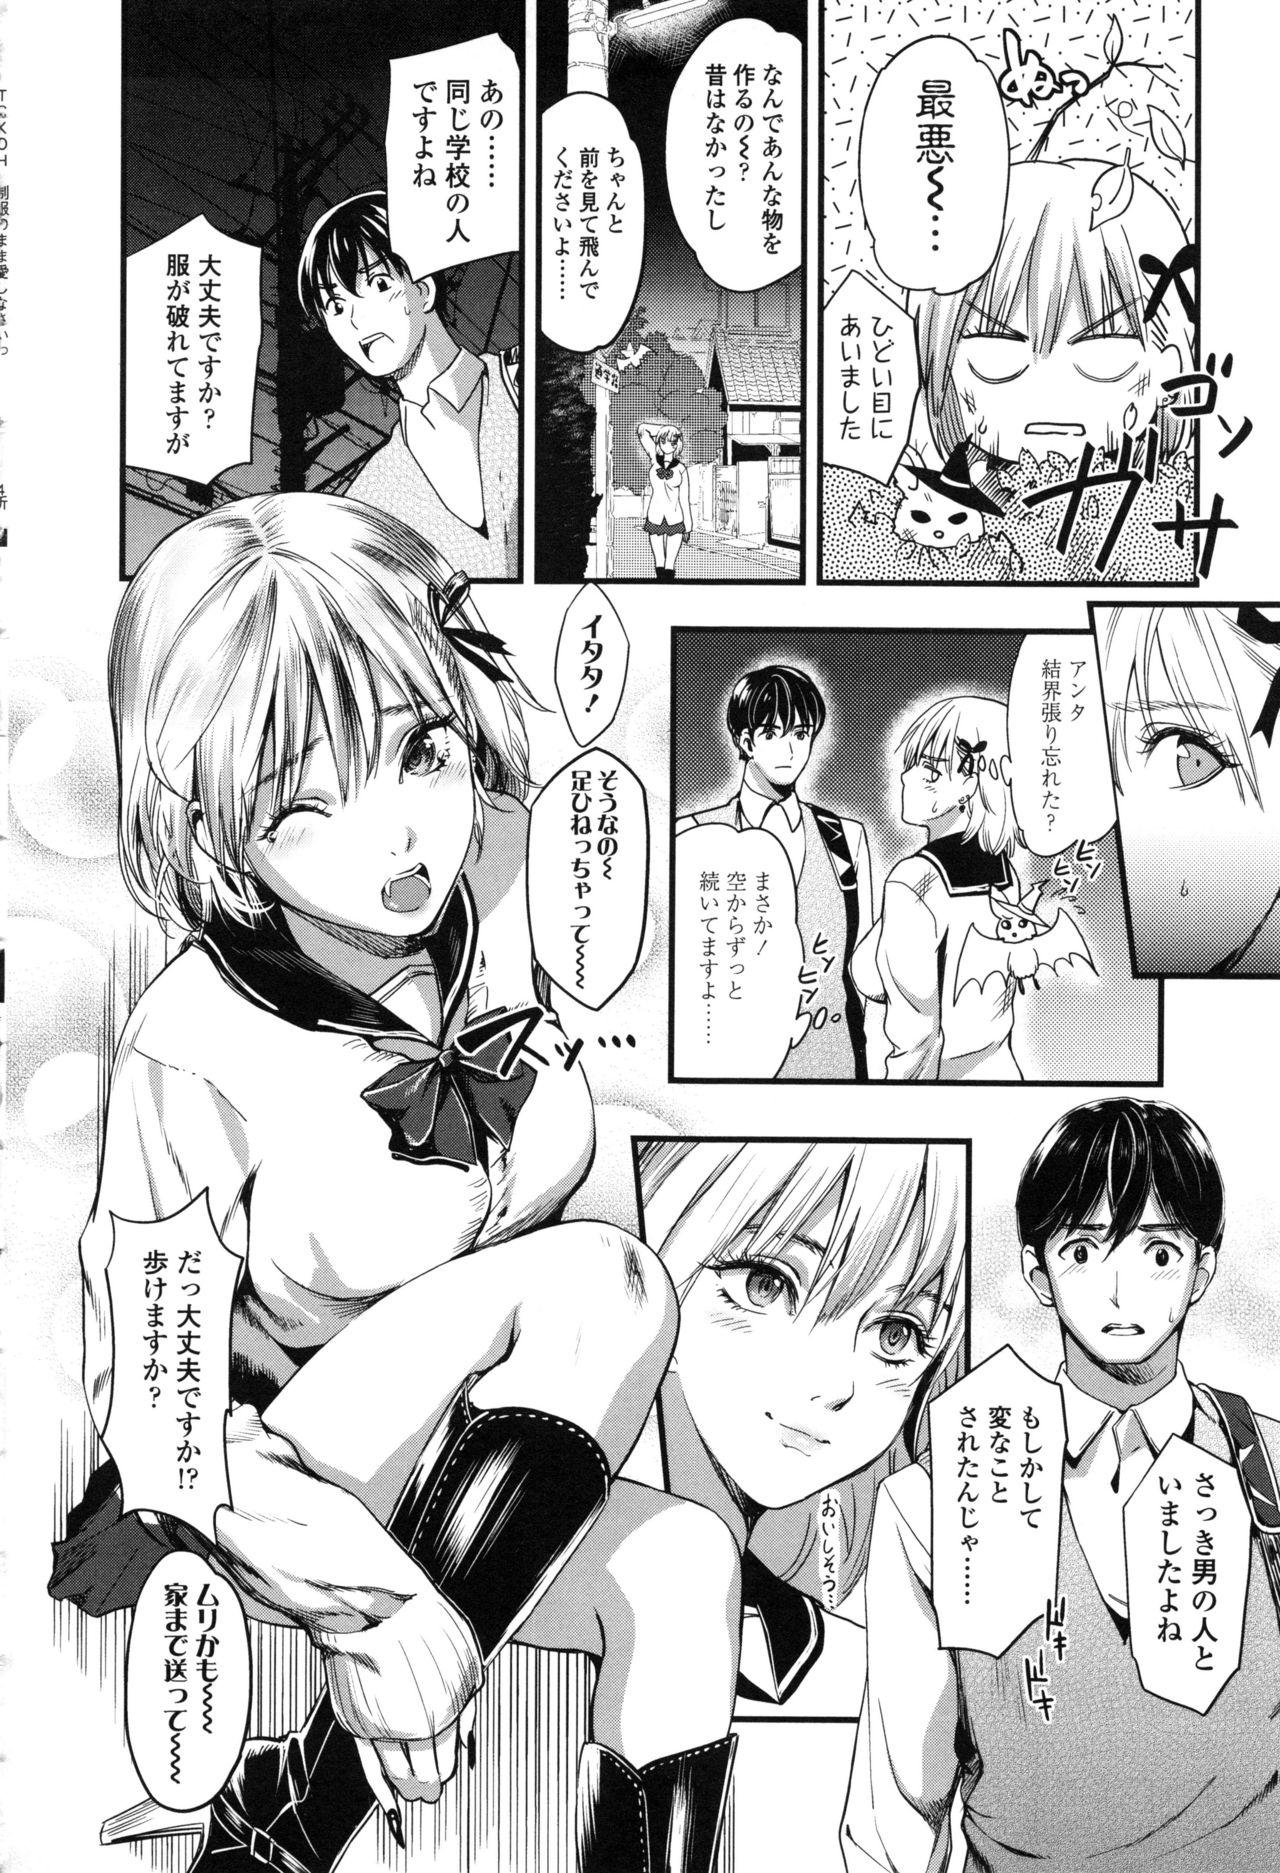 Seifuku no Mama Aishinasai! - Love in school uniform 69